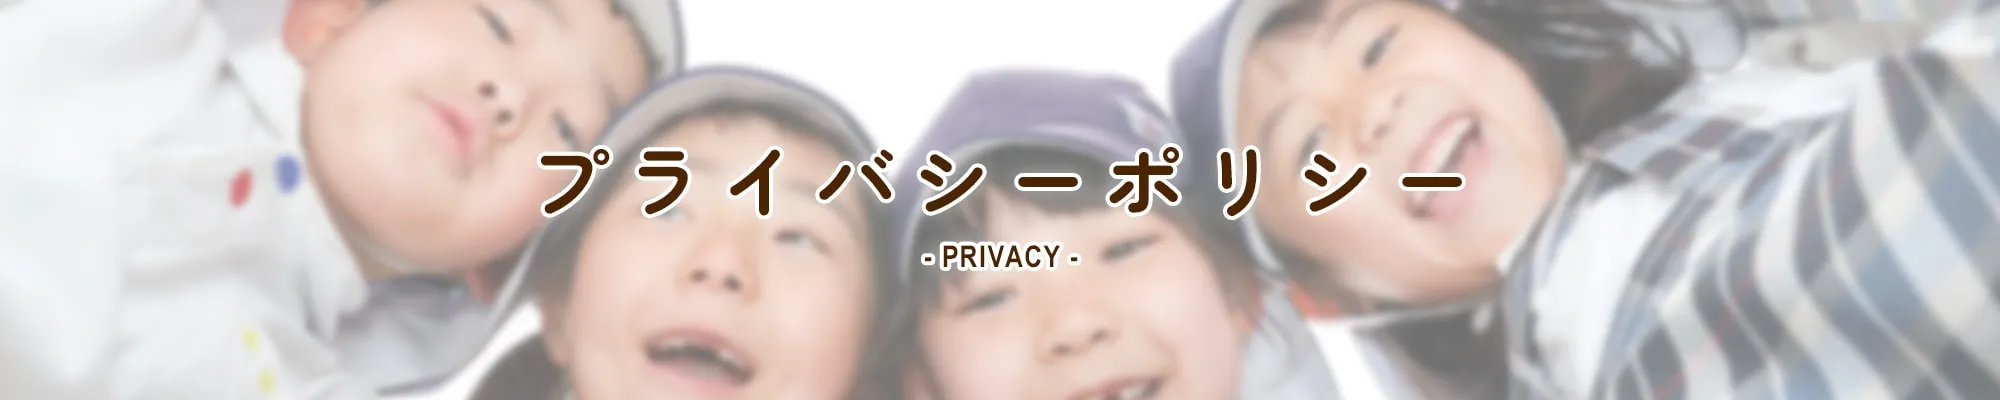 プライバシーポリシー PRIVACY